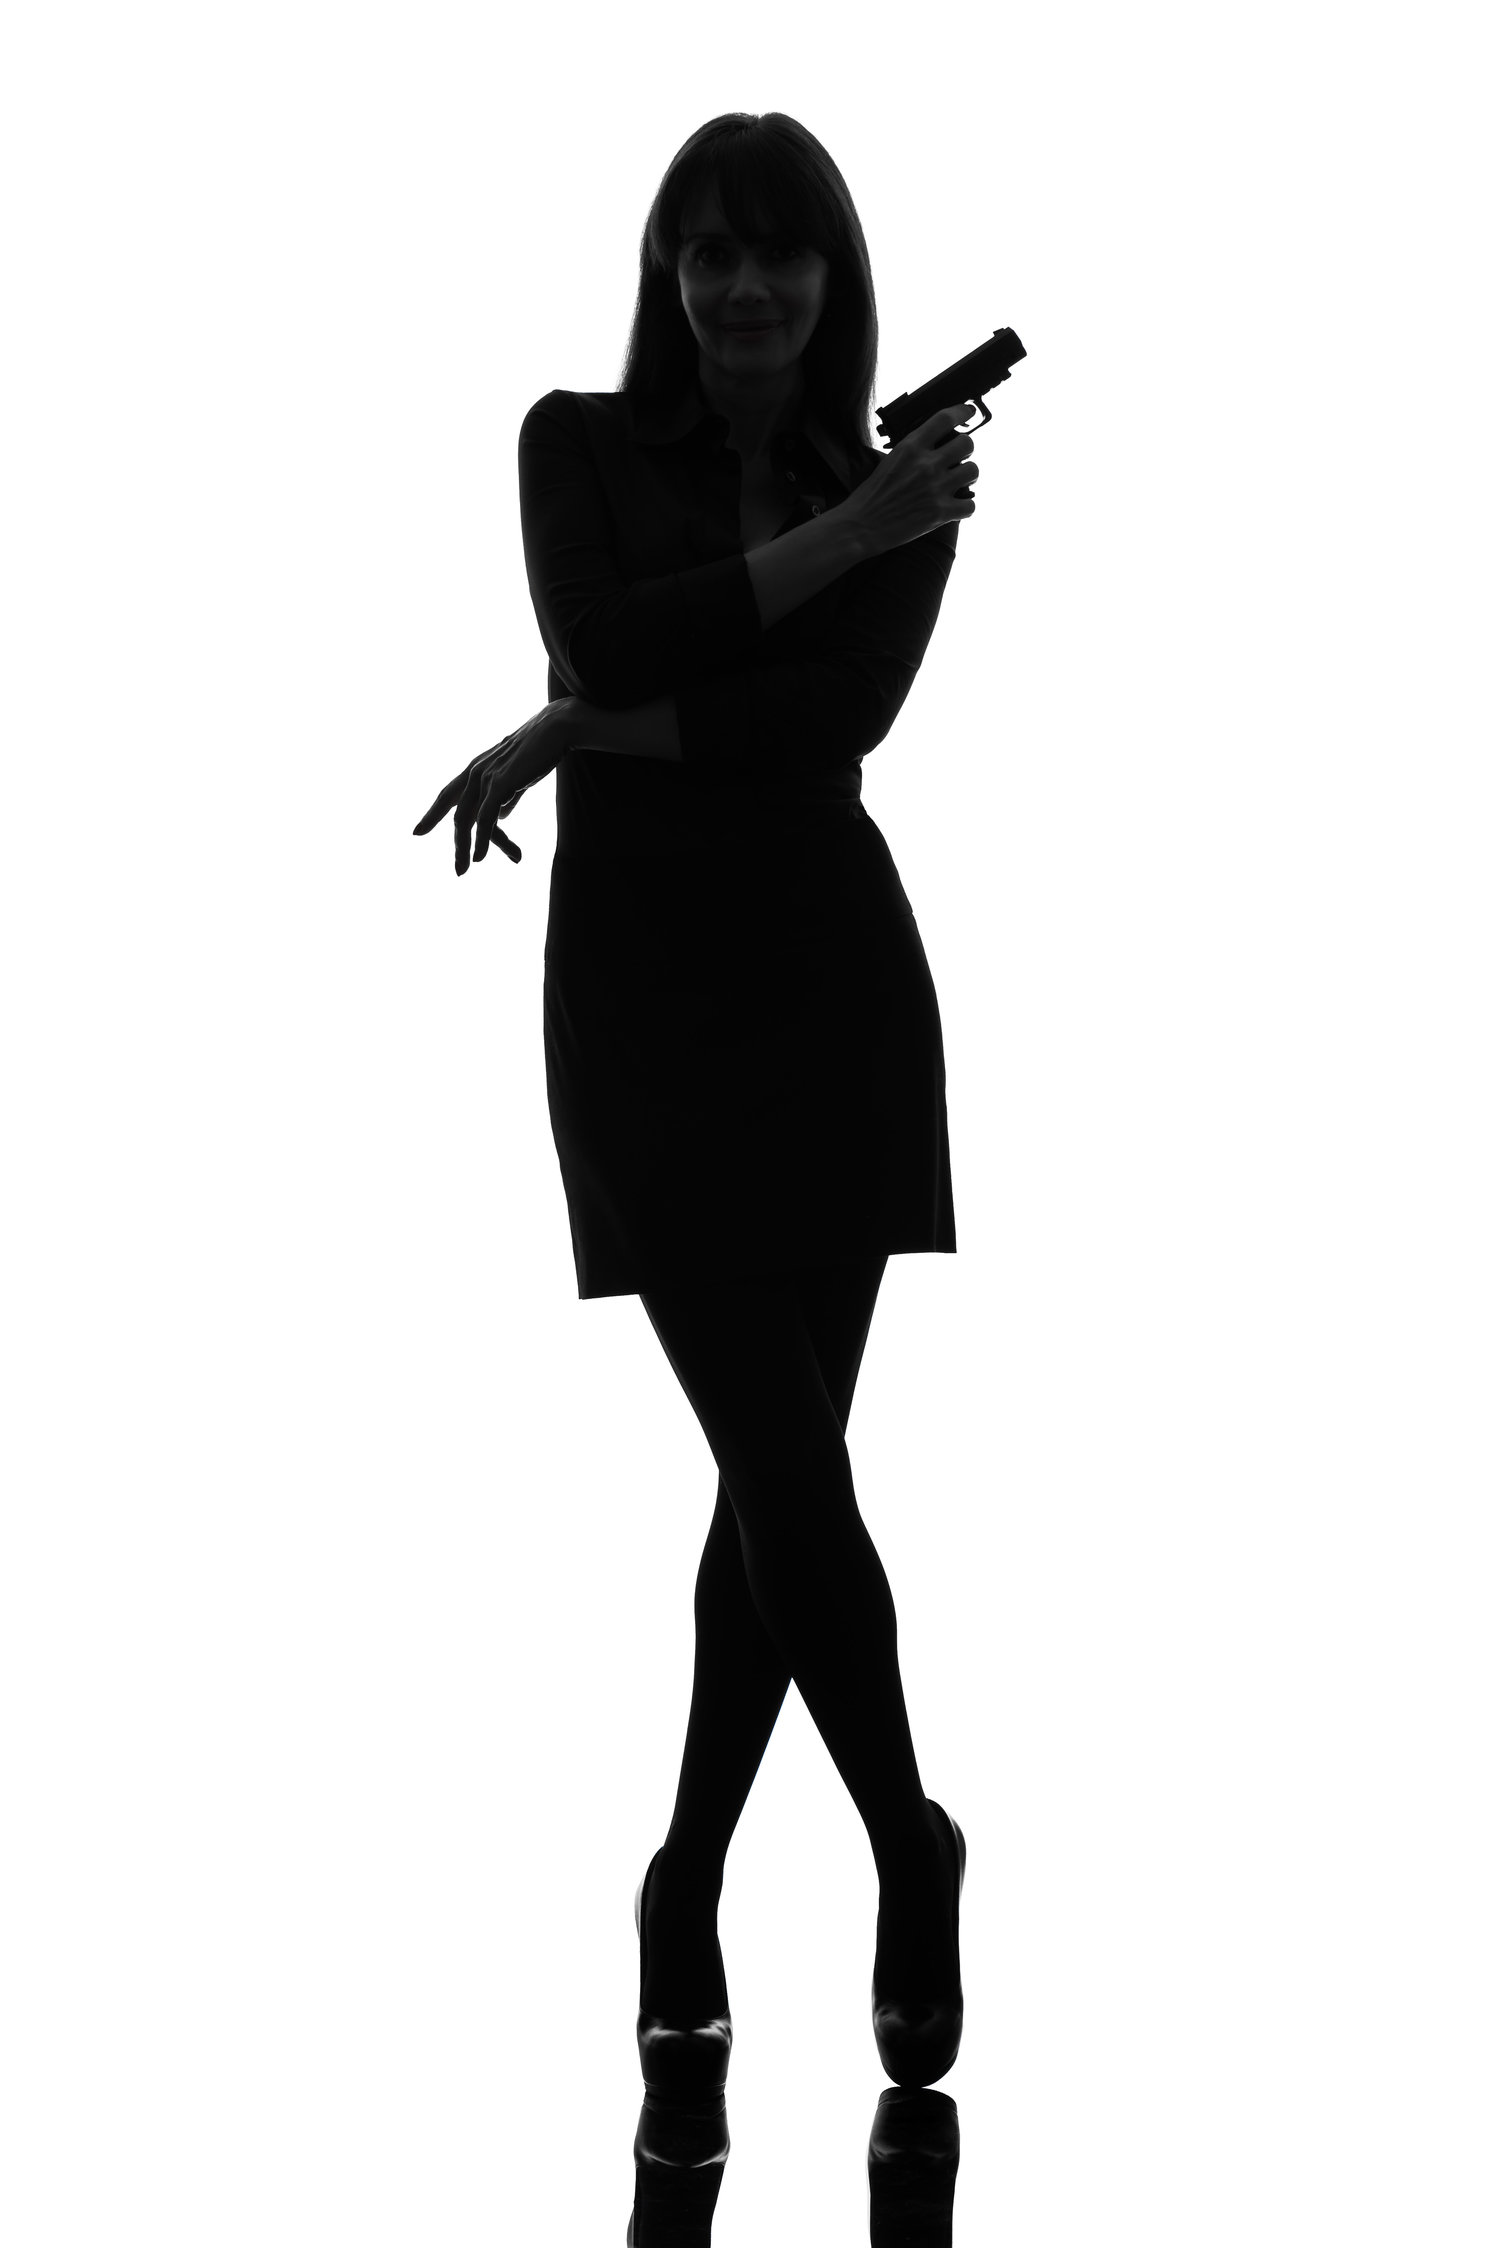 Secret Agent - Female Spy, Transparent background PNG HD thumbnail